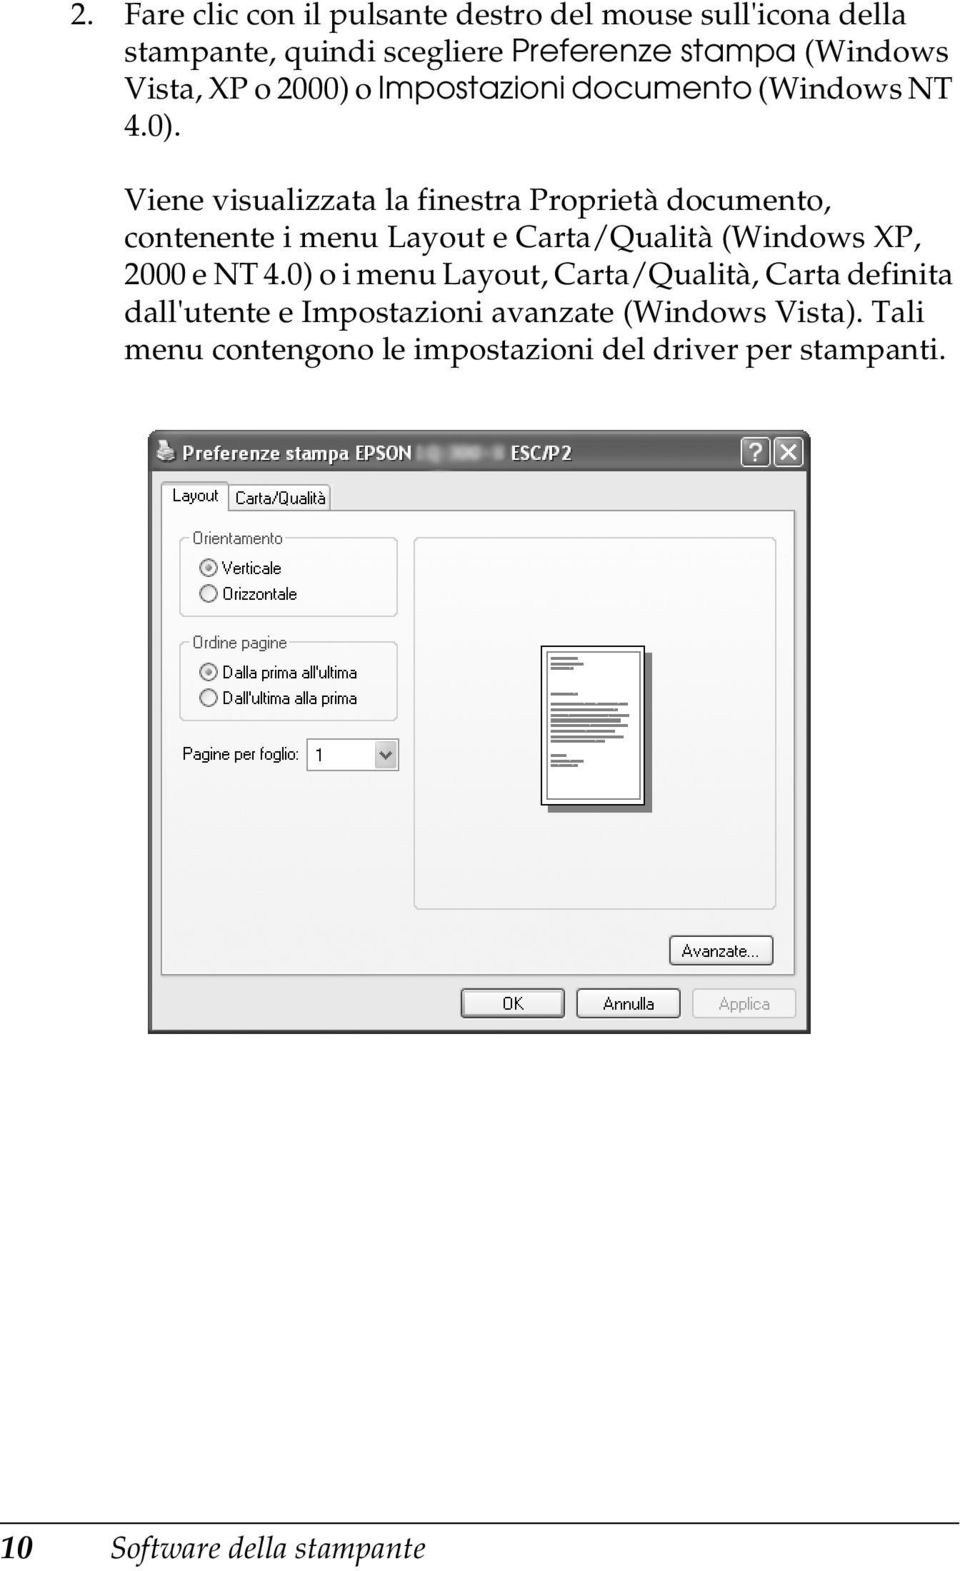 o Impostazioni documento (Windows NT 4.0).